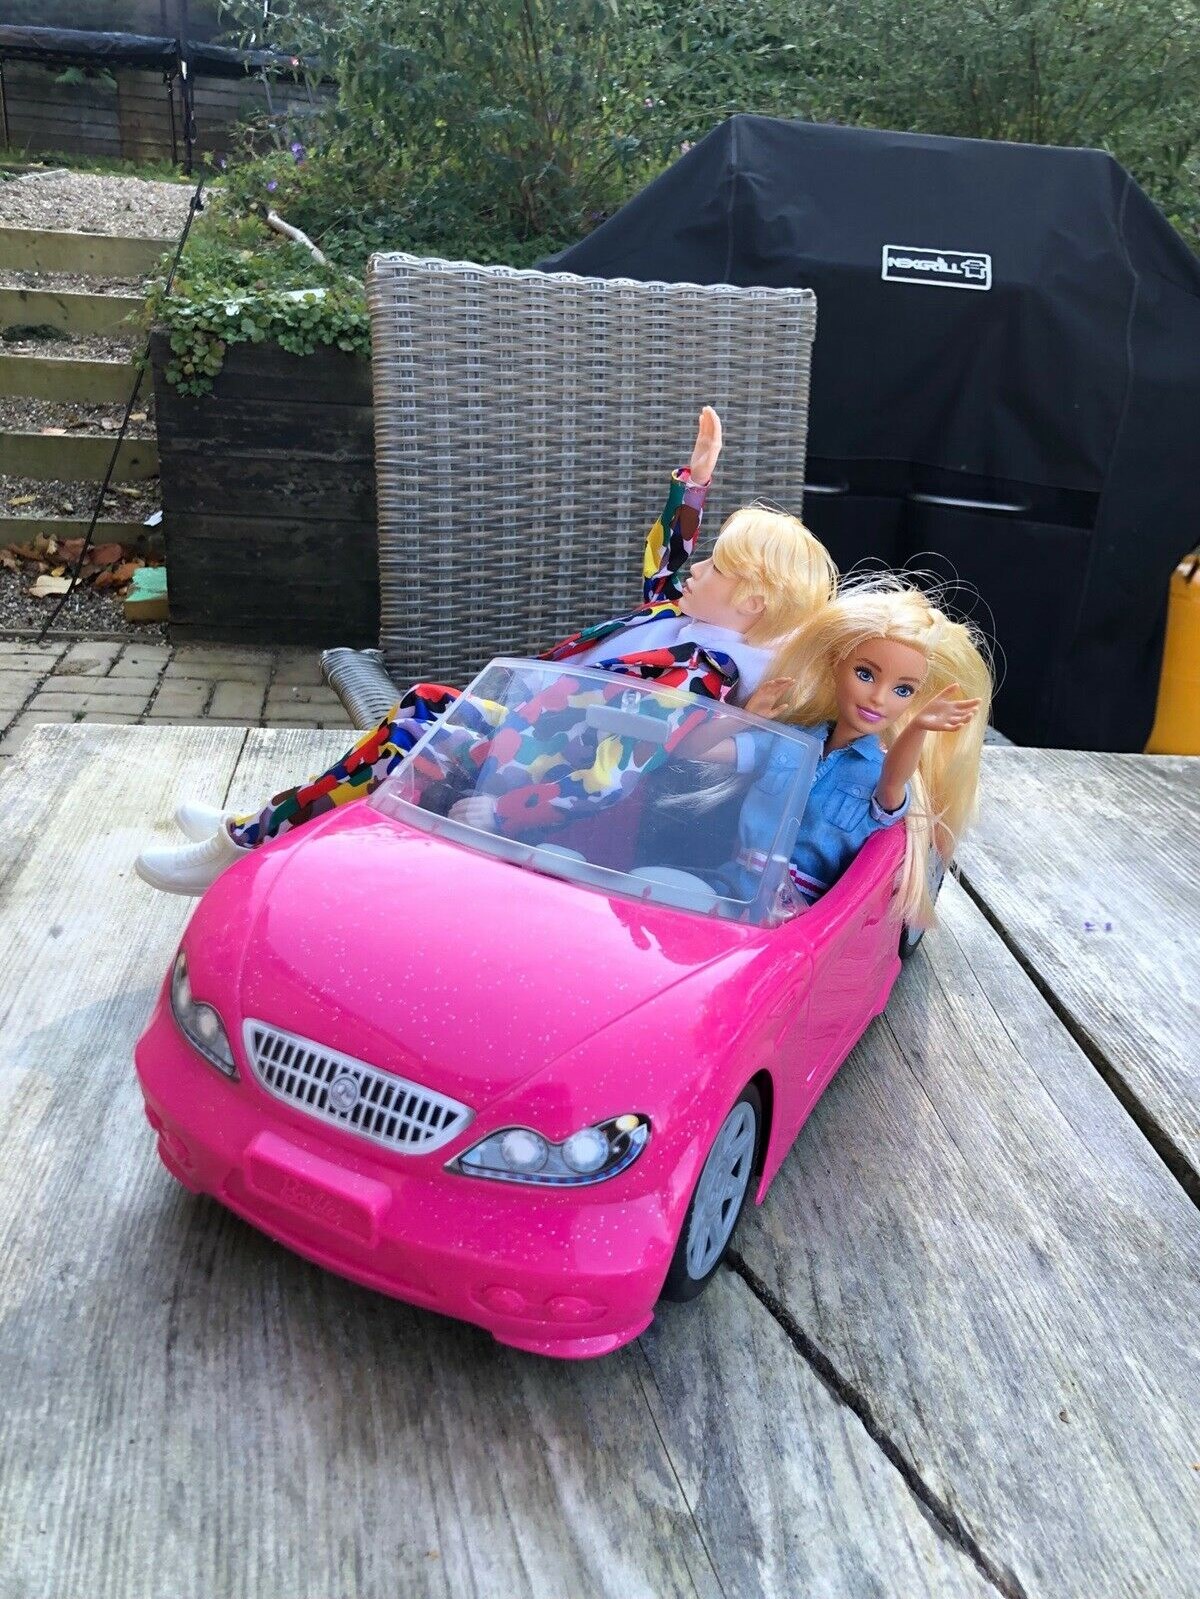 Selvfølgelig kører Barbie i en pink bil. Denne vogn koster 150 kroner, men så får du også begge dukker med i købet.